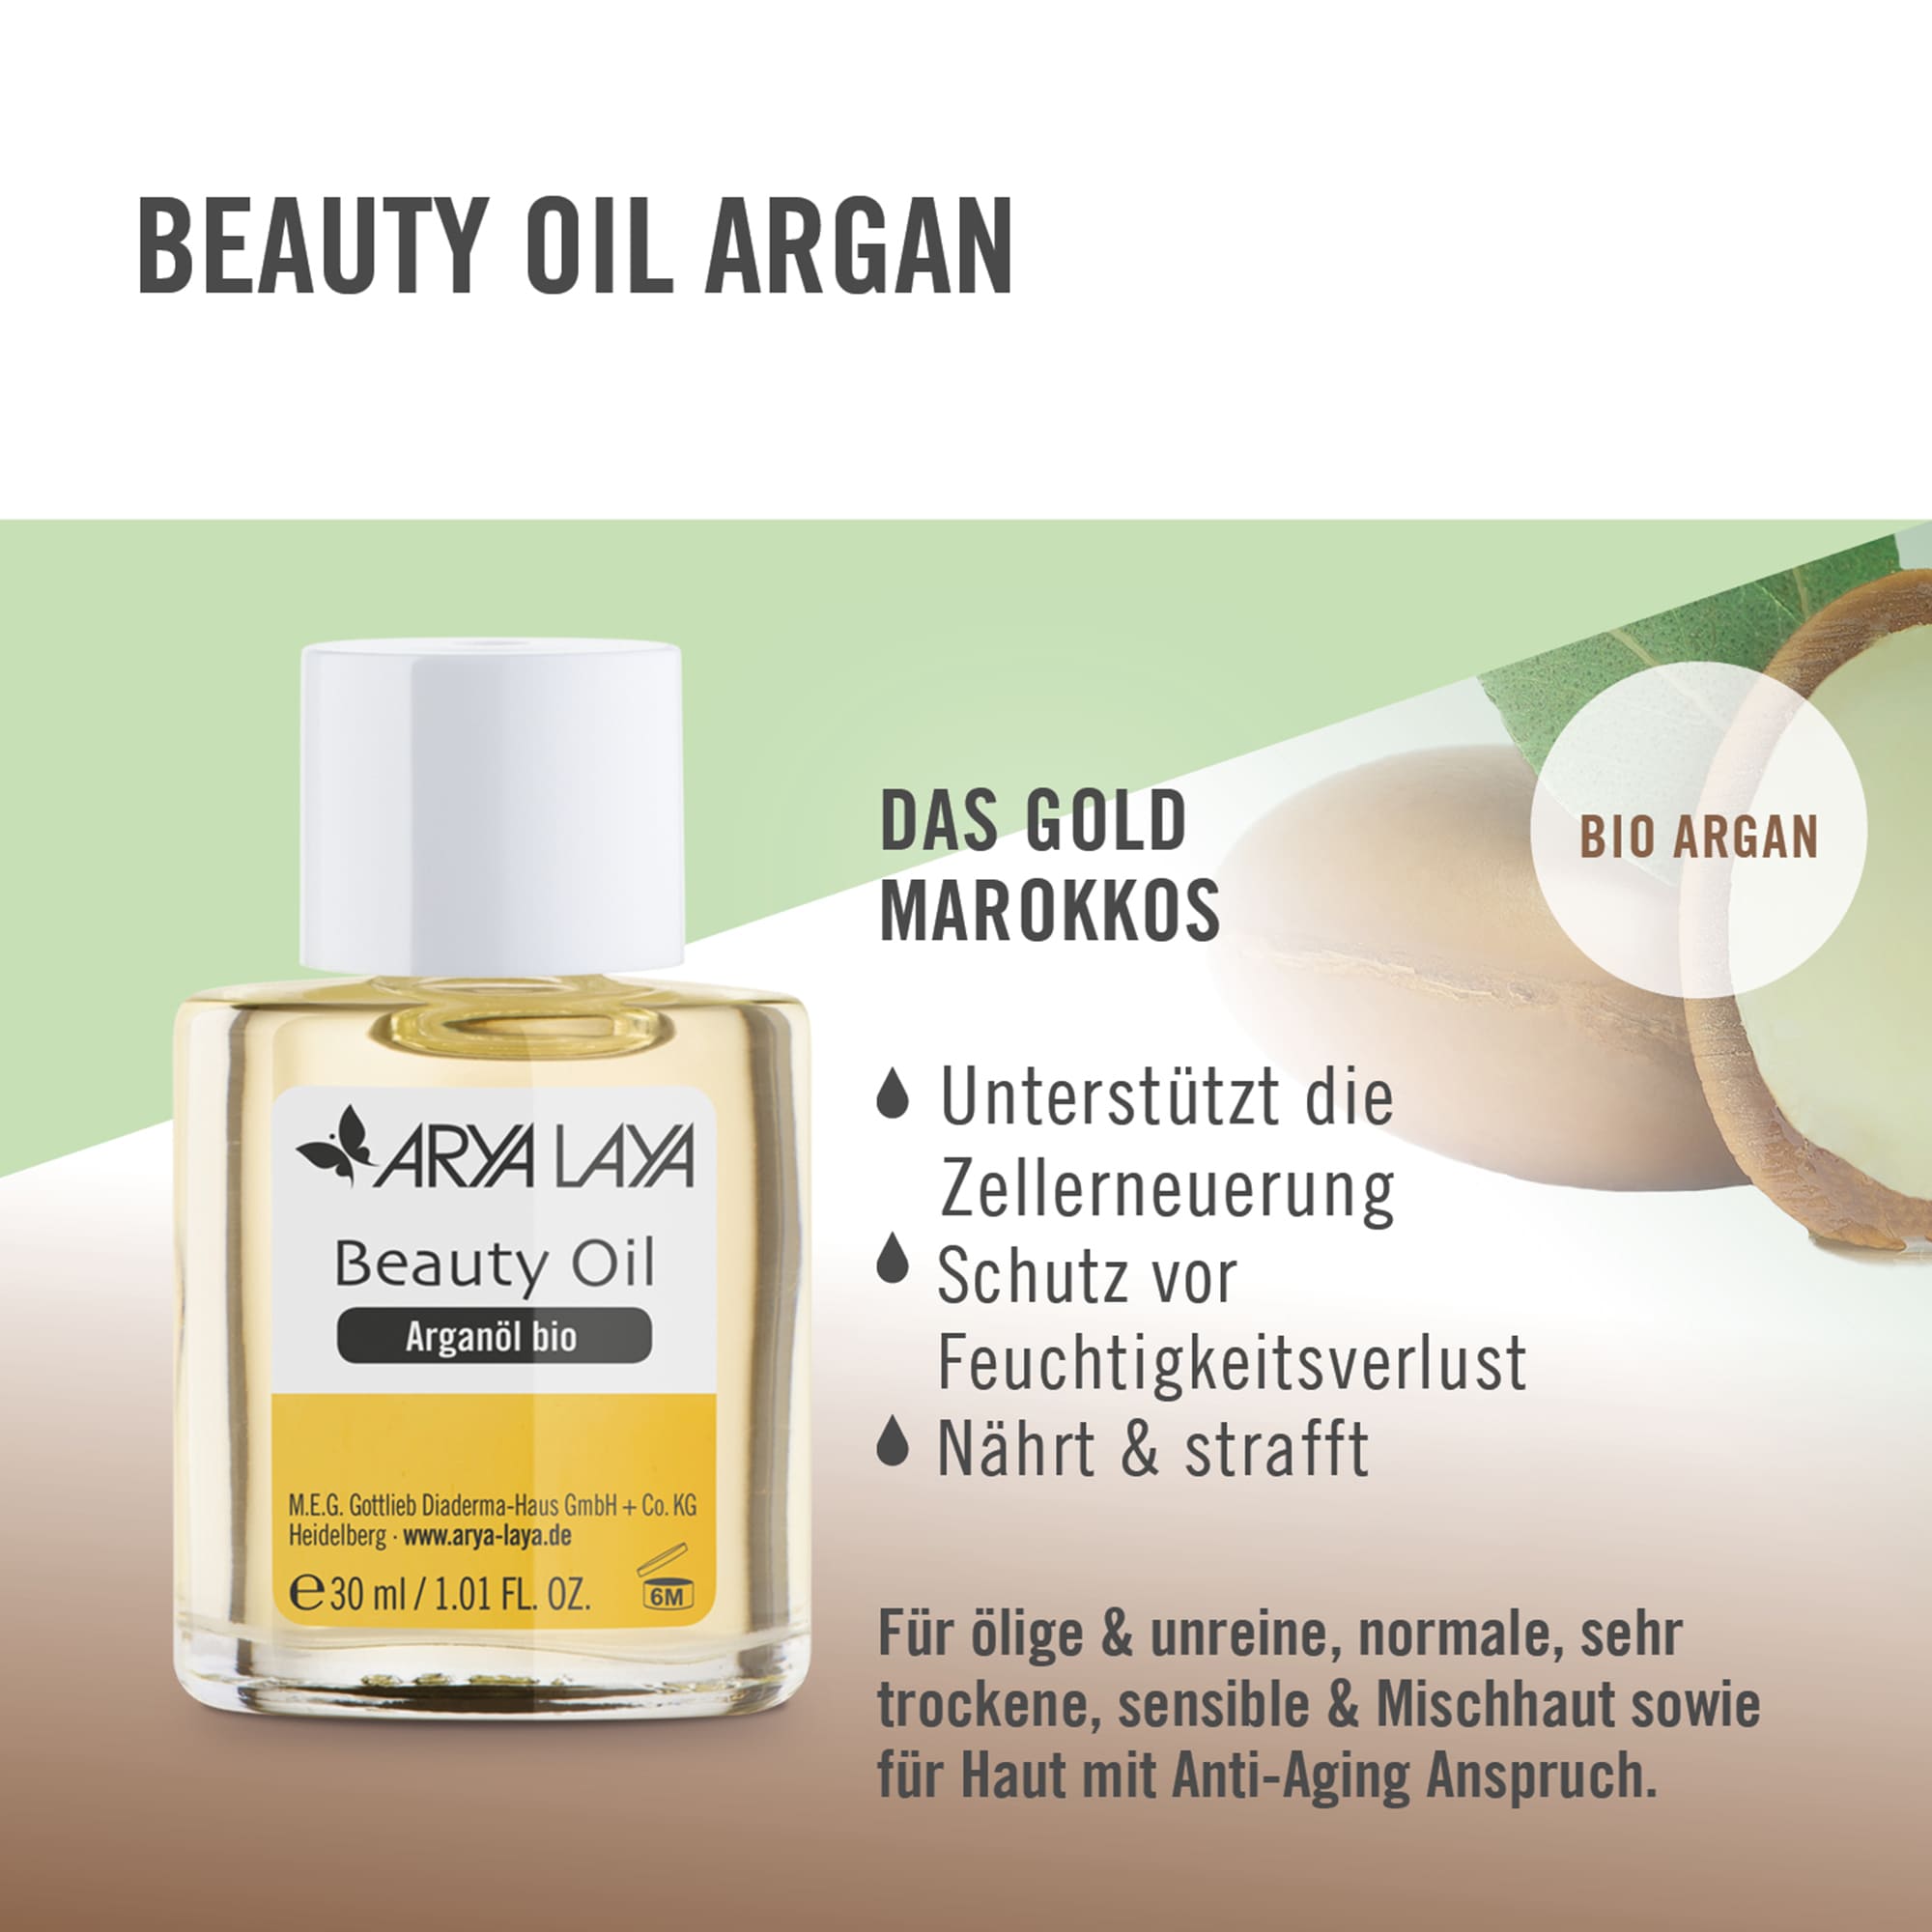 Wirkweise ARYA LAYA Beauty Oil Arganöl bio, 30 ml 